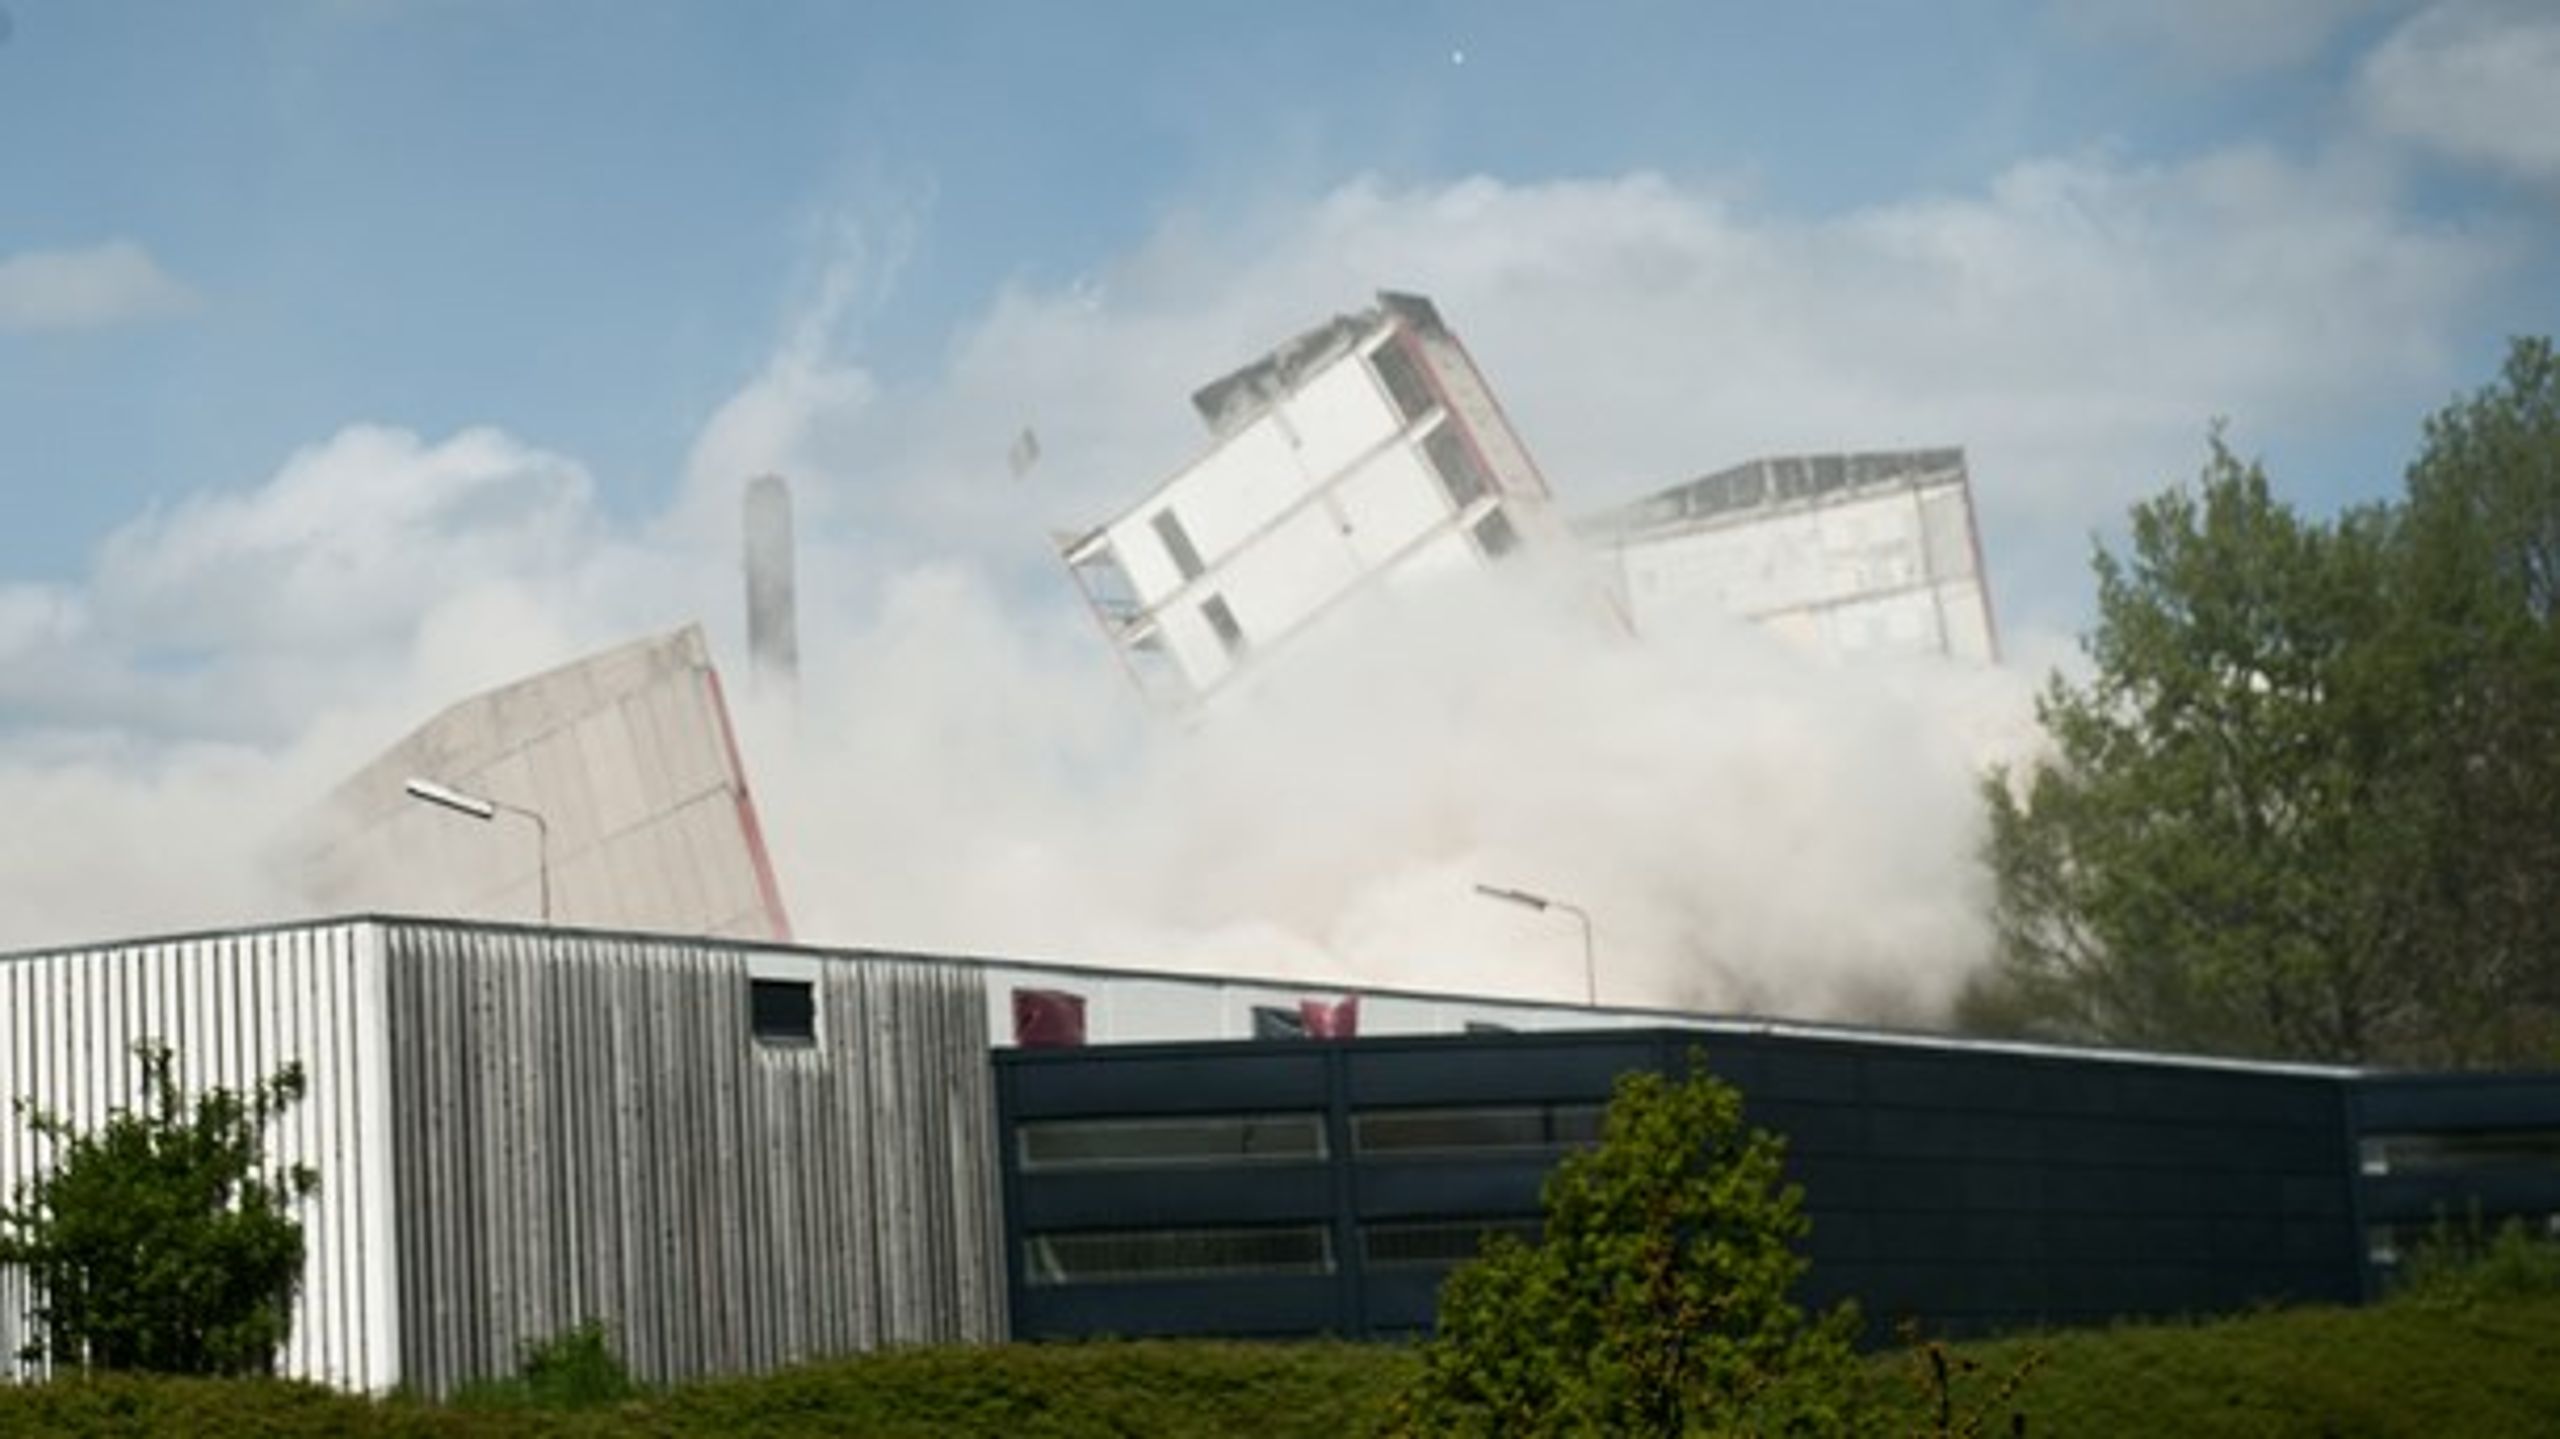 De to højhuse Agerkær og Ruskær i Rødovre sprænges i luften søndag d. 13 maj 2012.